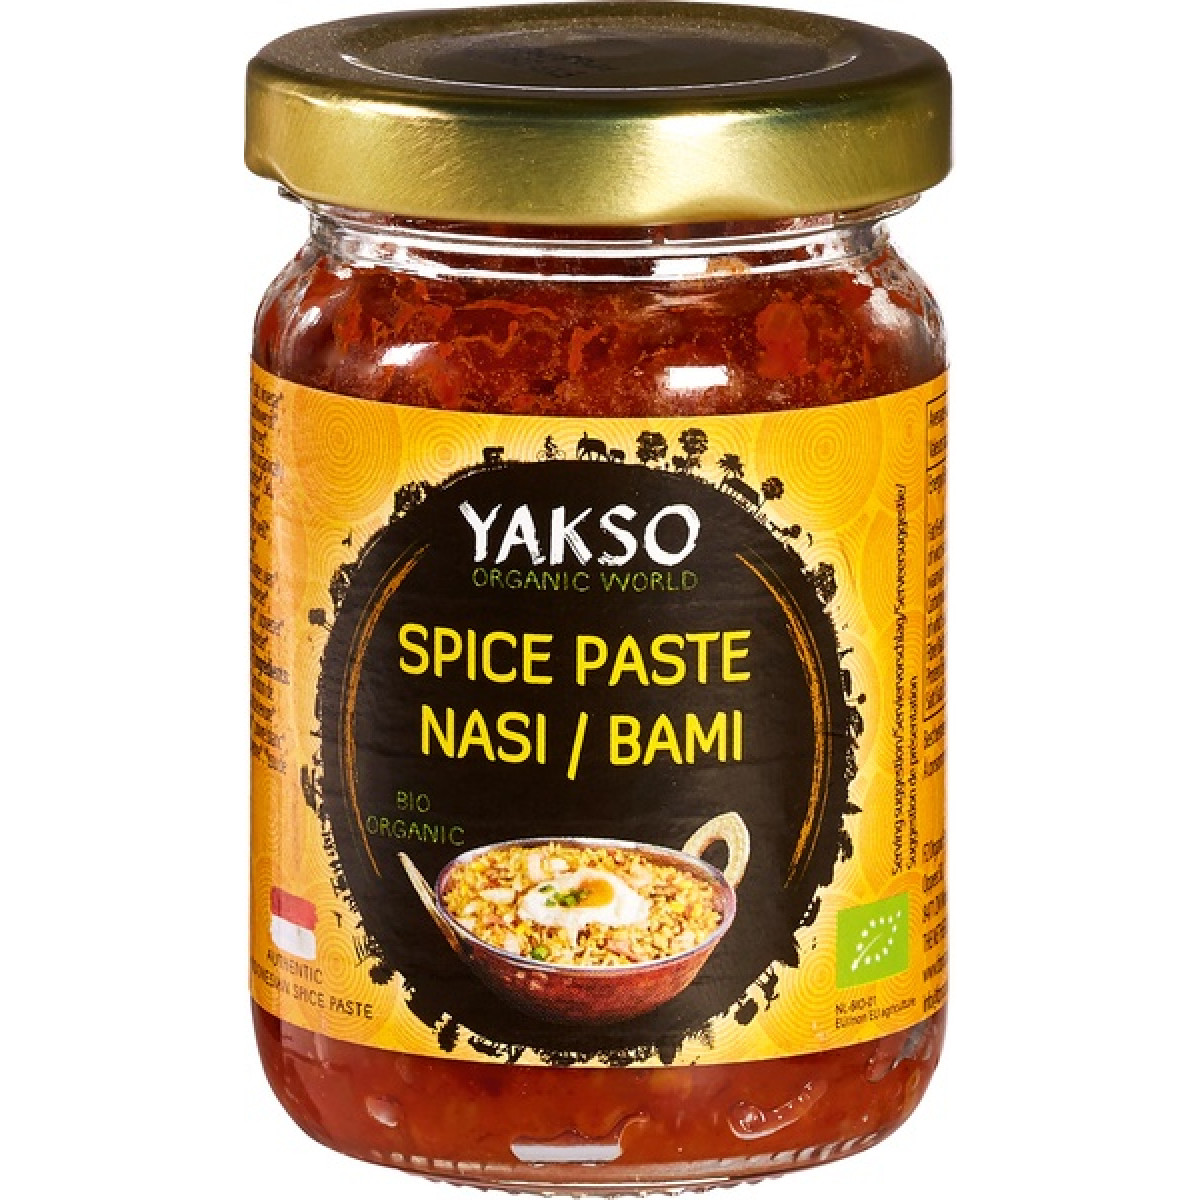 Spice Paste Nasi/Bami